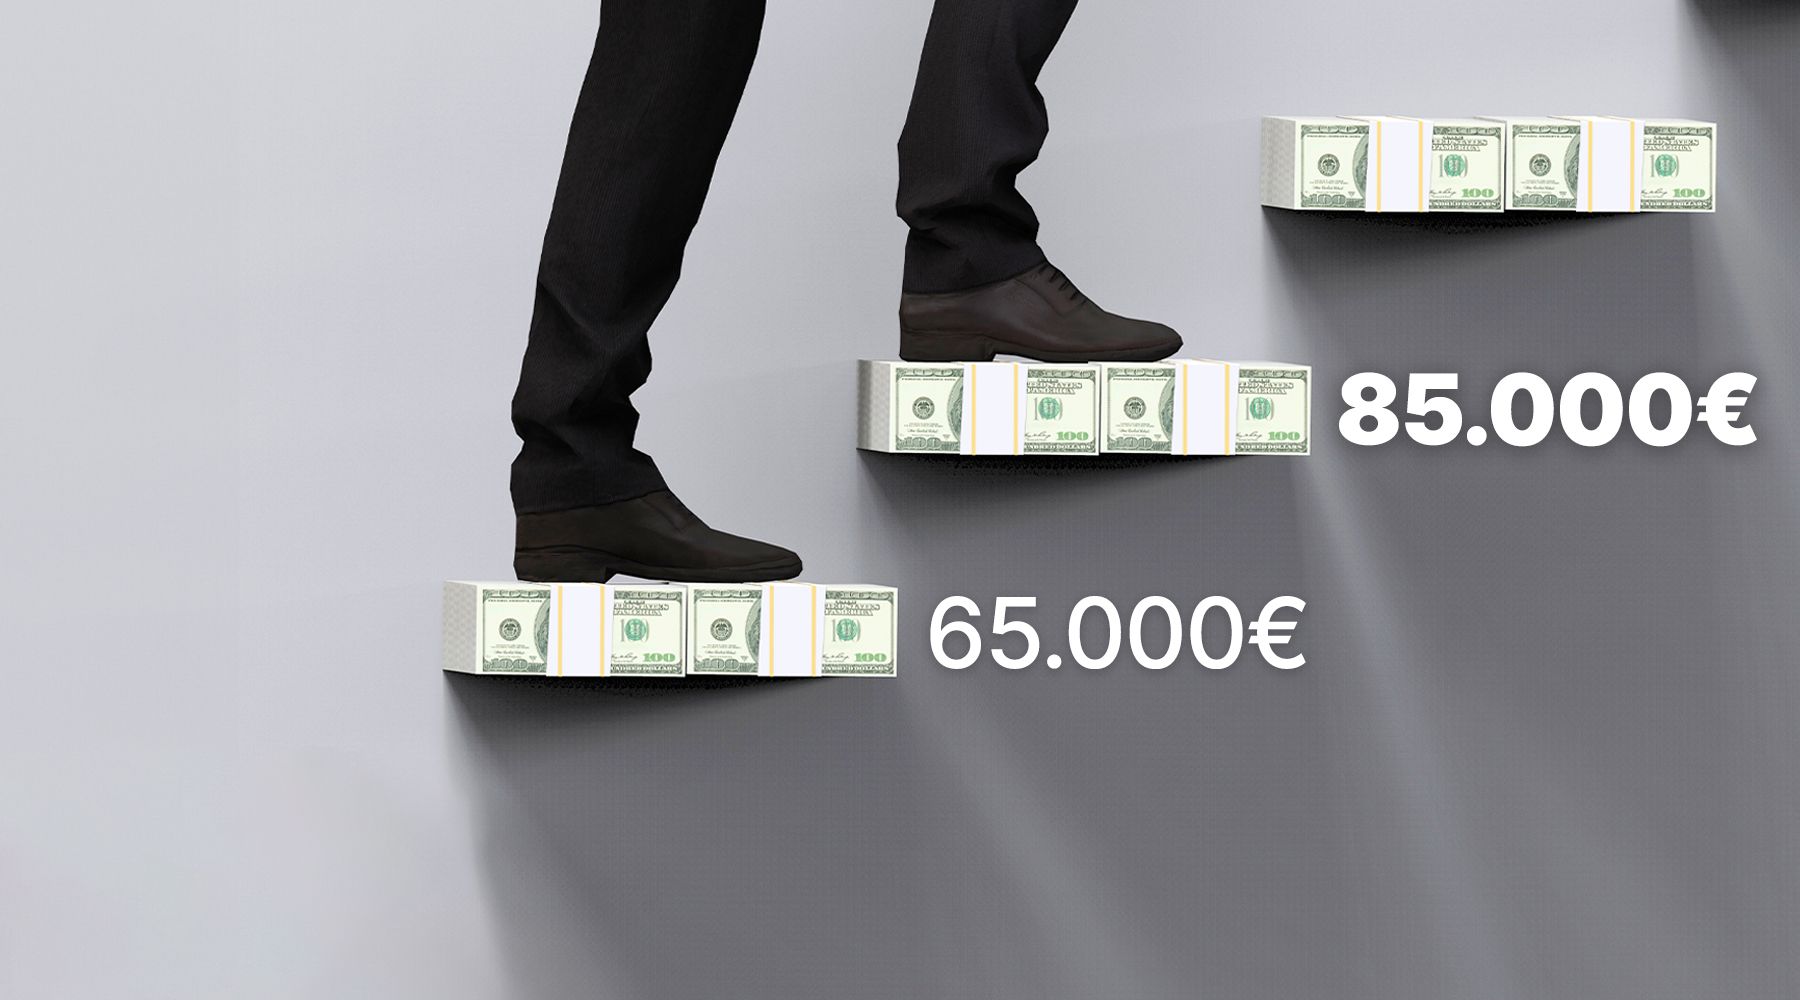 Immagine dell'articolo: Da 65.000€ a 85.000€: rivoluzione nel Regime Forfettario